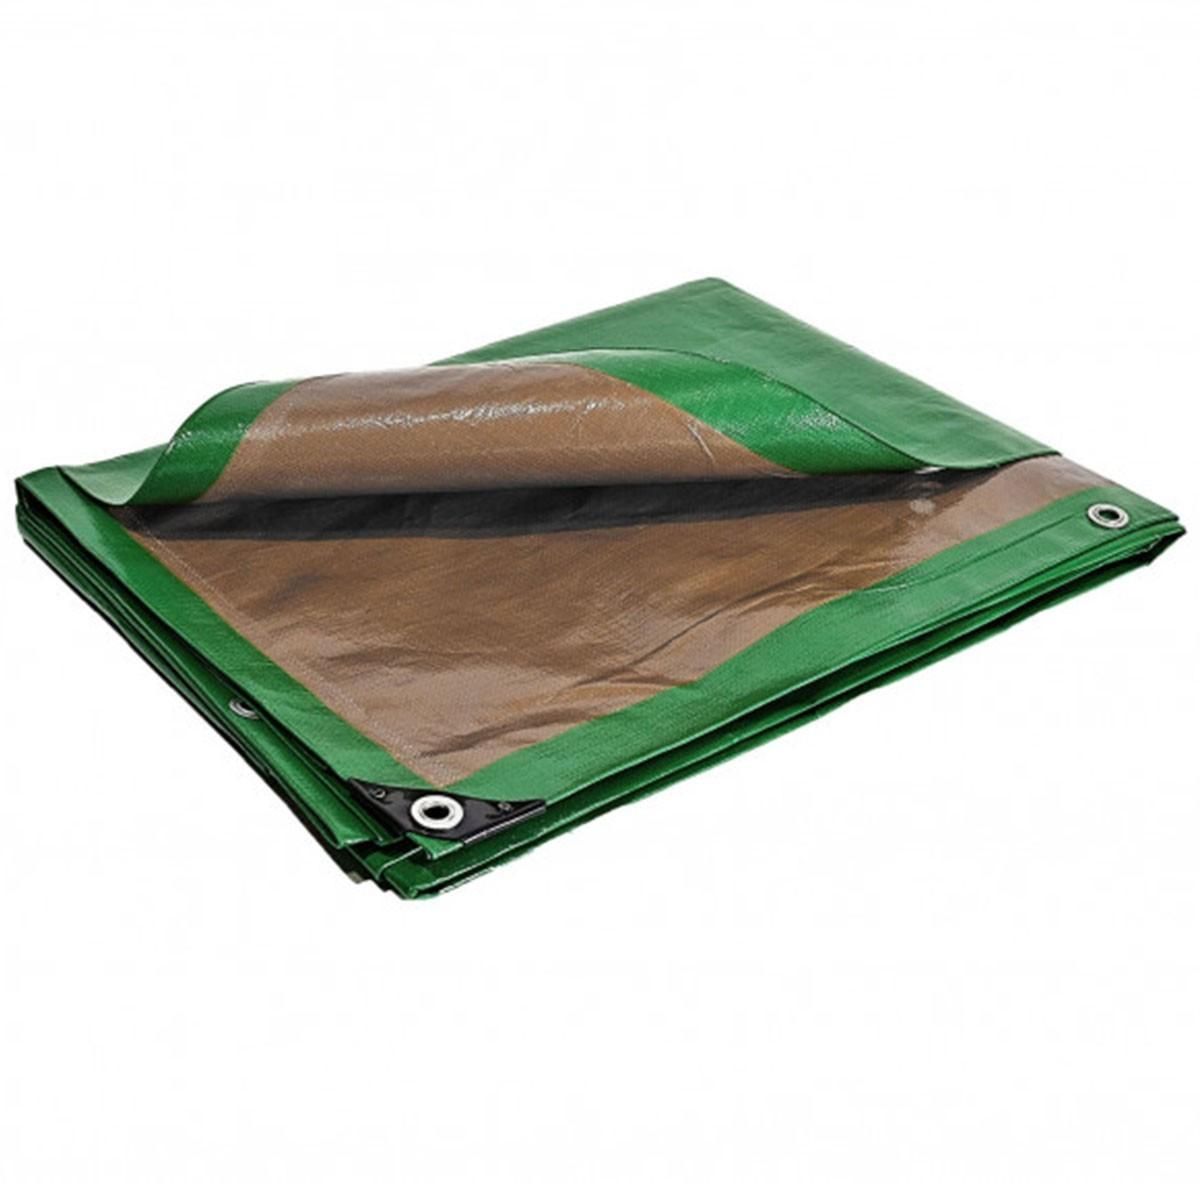 Tecplast Bâche plastique 6 x 10 m étanche traitée anti UV verte et marron 250g/m2 - bâche de protection polyéthylène haute qualité